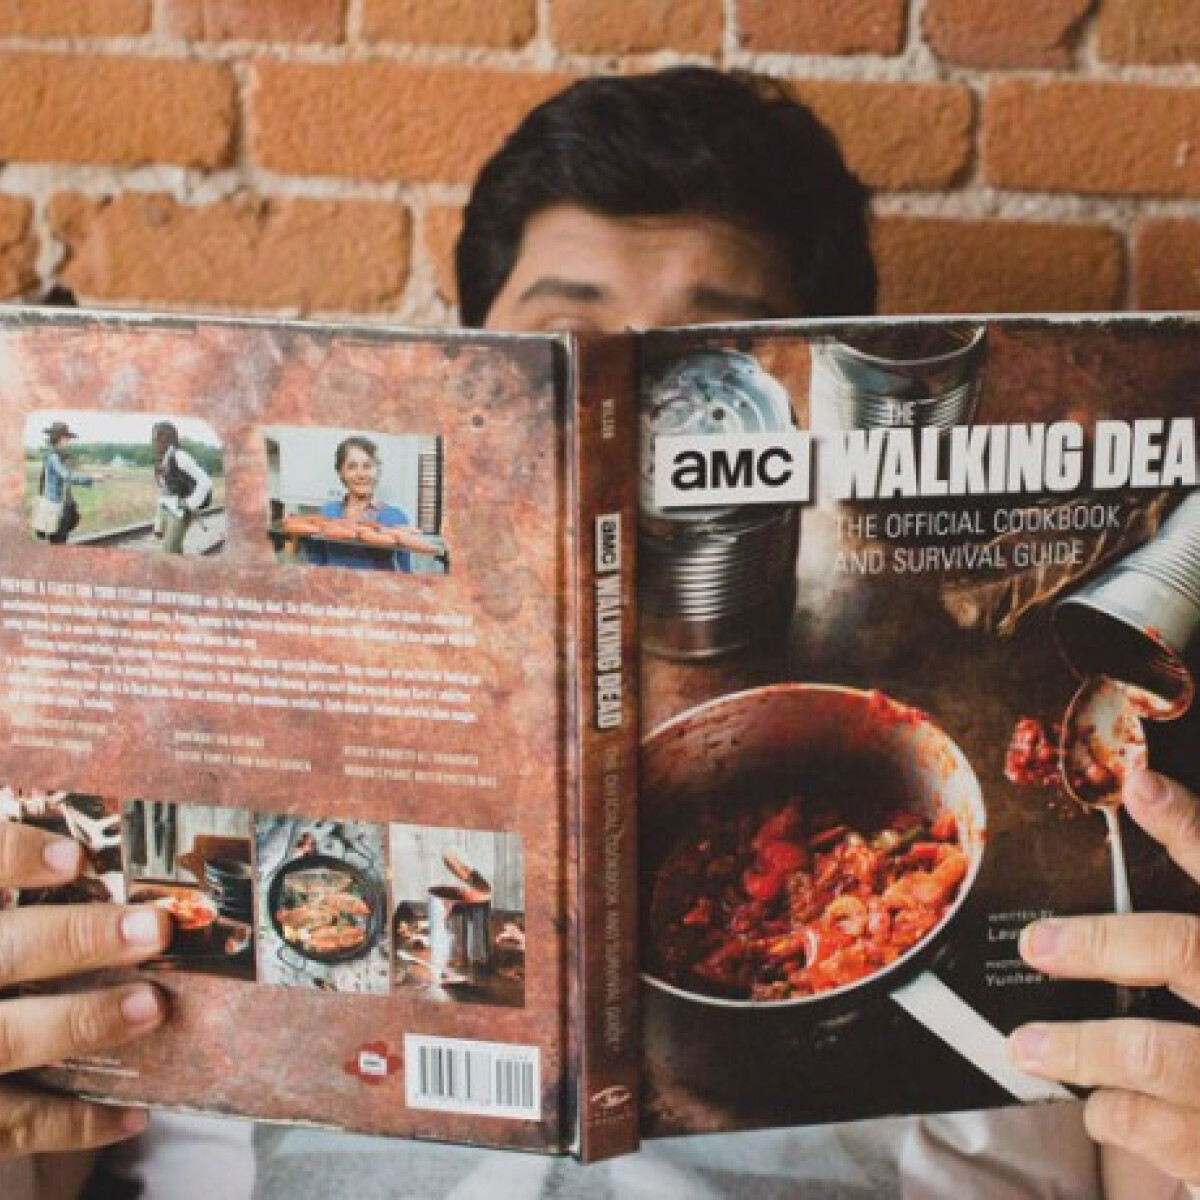 Mindenki vonuljon fedezékbe, Walking Dead-es zombiszakácskönyv érkezik a könyvpiacra